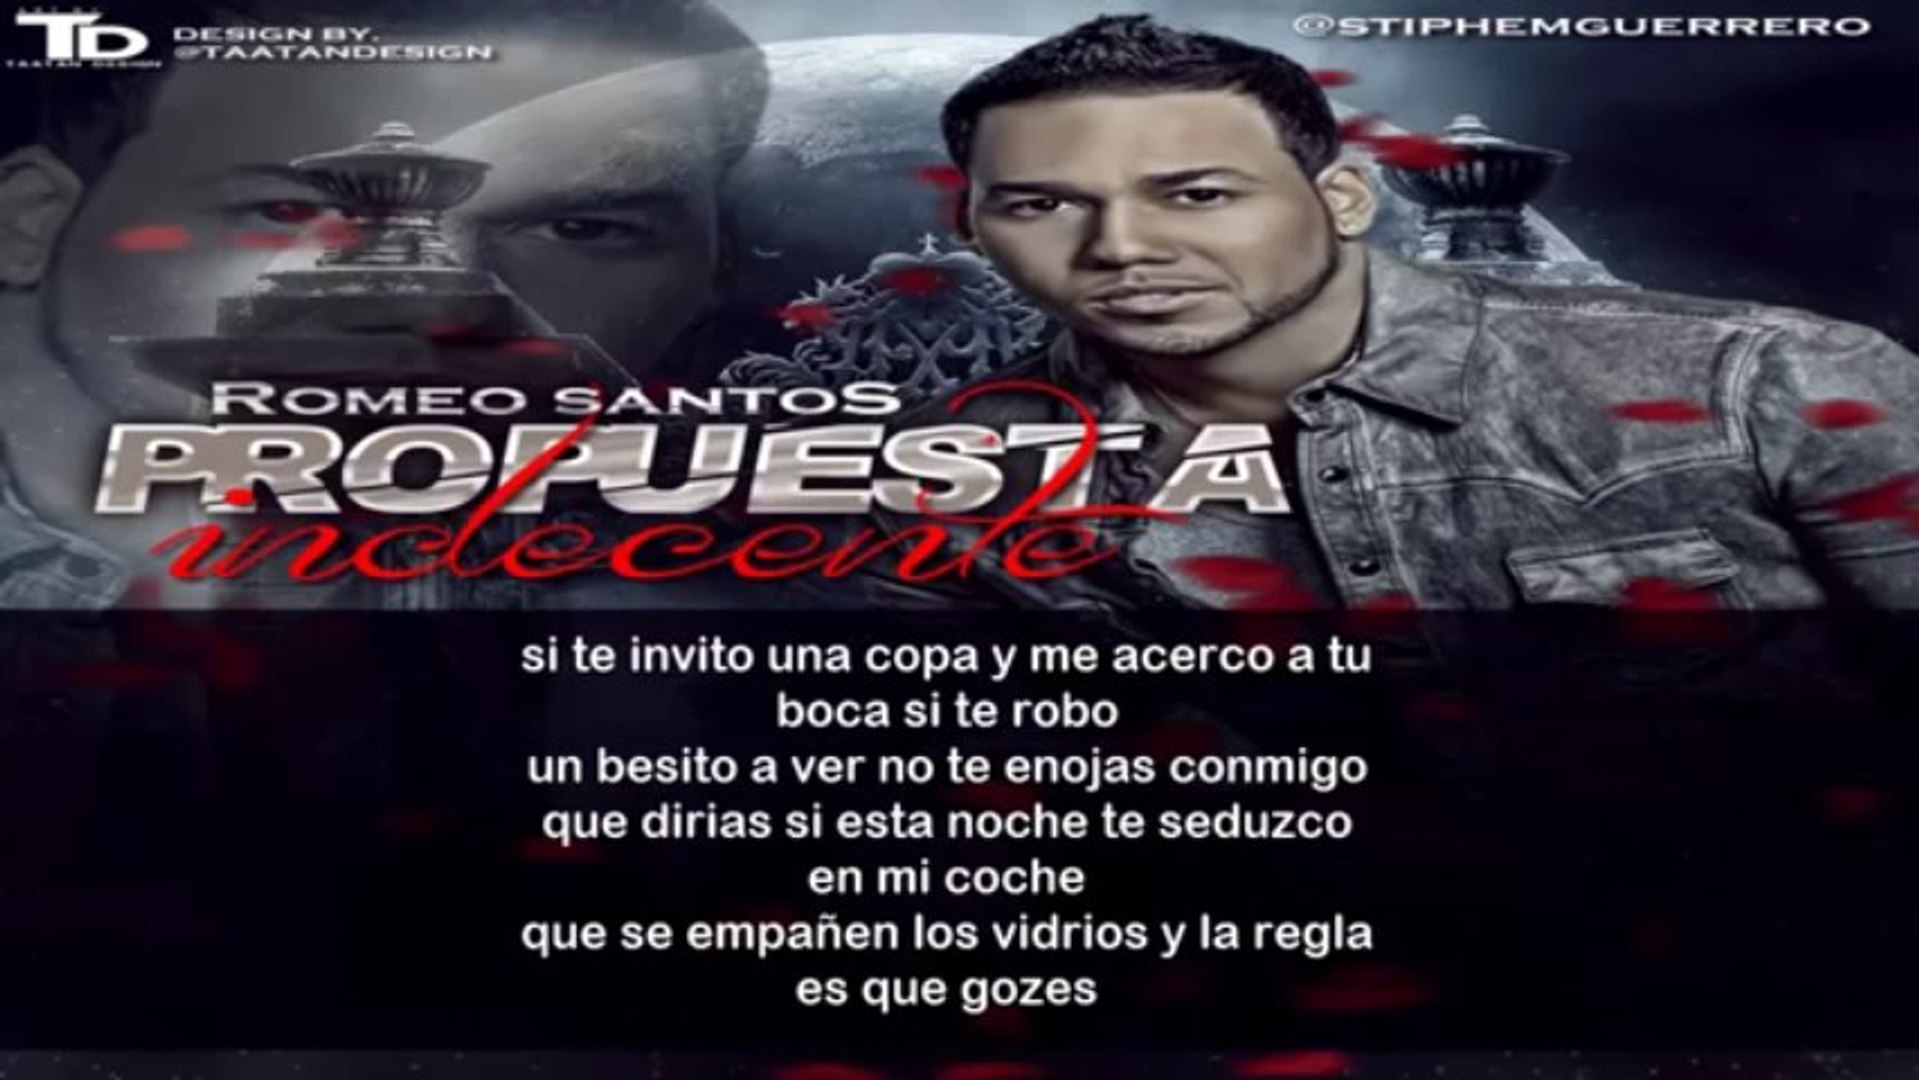 Romeo Santos - Propuesta Indecente (Formula Vol.2) (Letra) 2013 !  @RomeoSantosPage - Vídeo Dailymotion